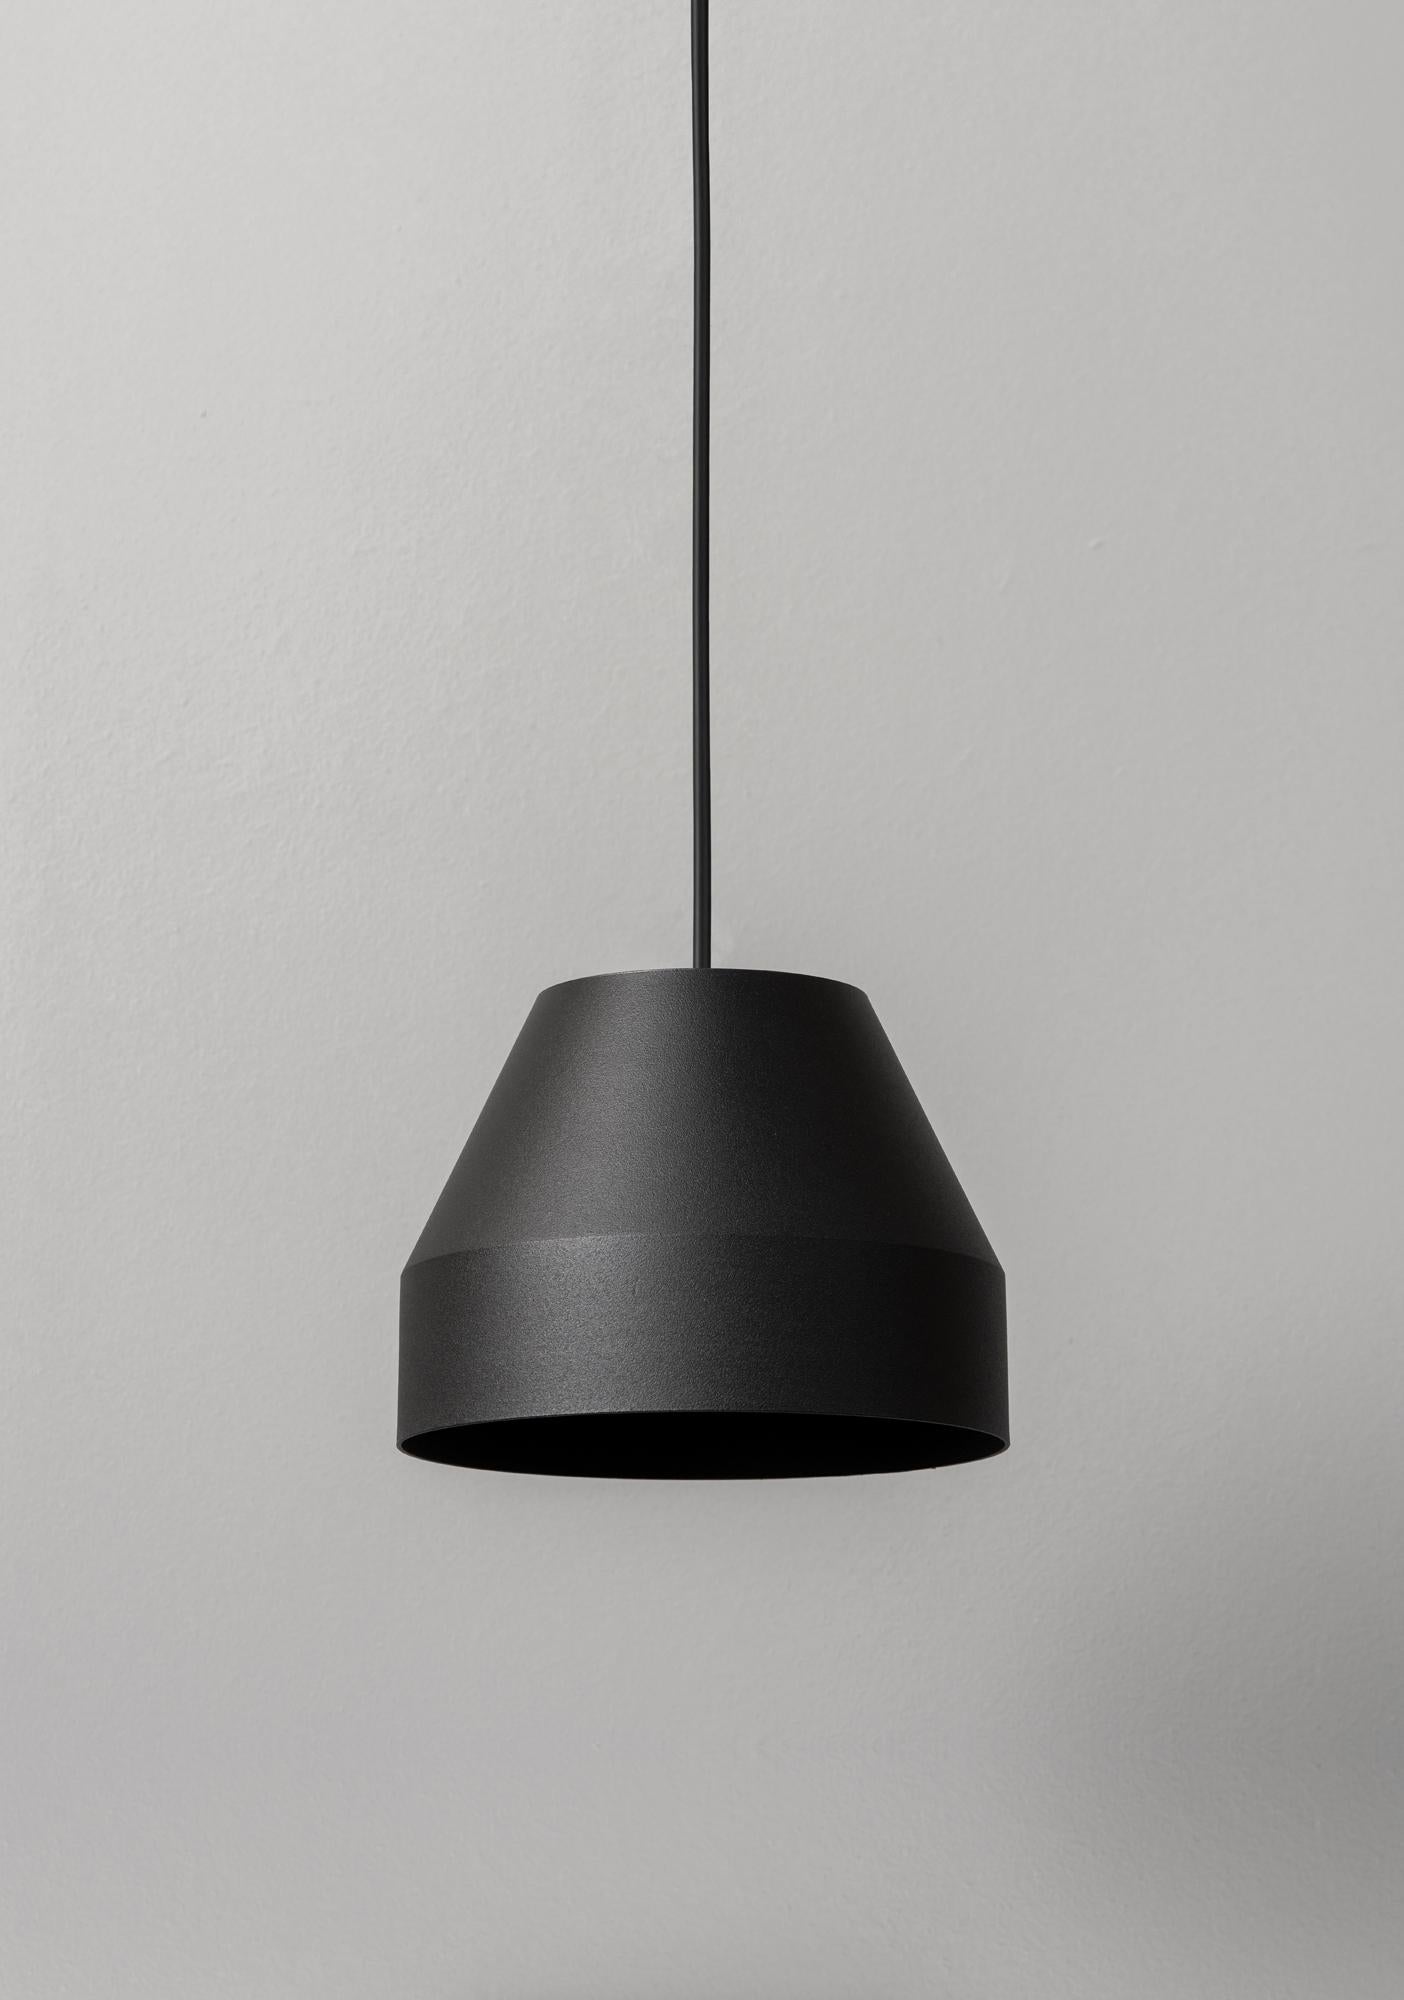 Petite lampe suspendue noire par +kouple
Dimensions : Ø 16 x H 12 cm : Ø 16 x H 12 cm. 
Matériaux : Acier peint par poudrage.

Disponible en différentes couleurs. La longueur de la tige est de 200 cm. Veuillez nous contacter.

Toutes nos lampes